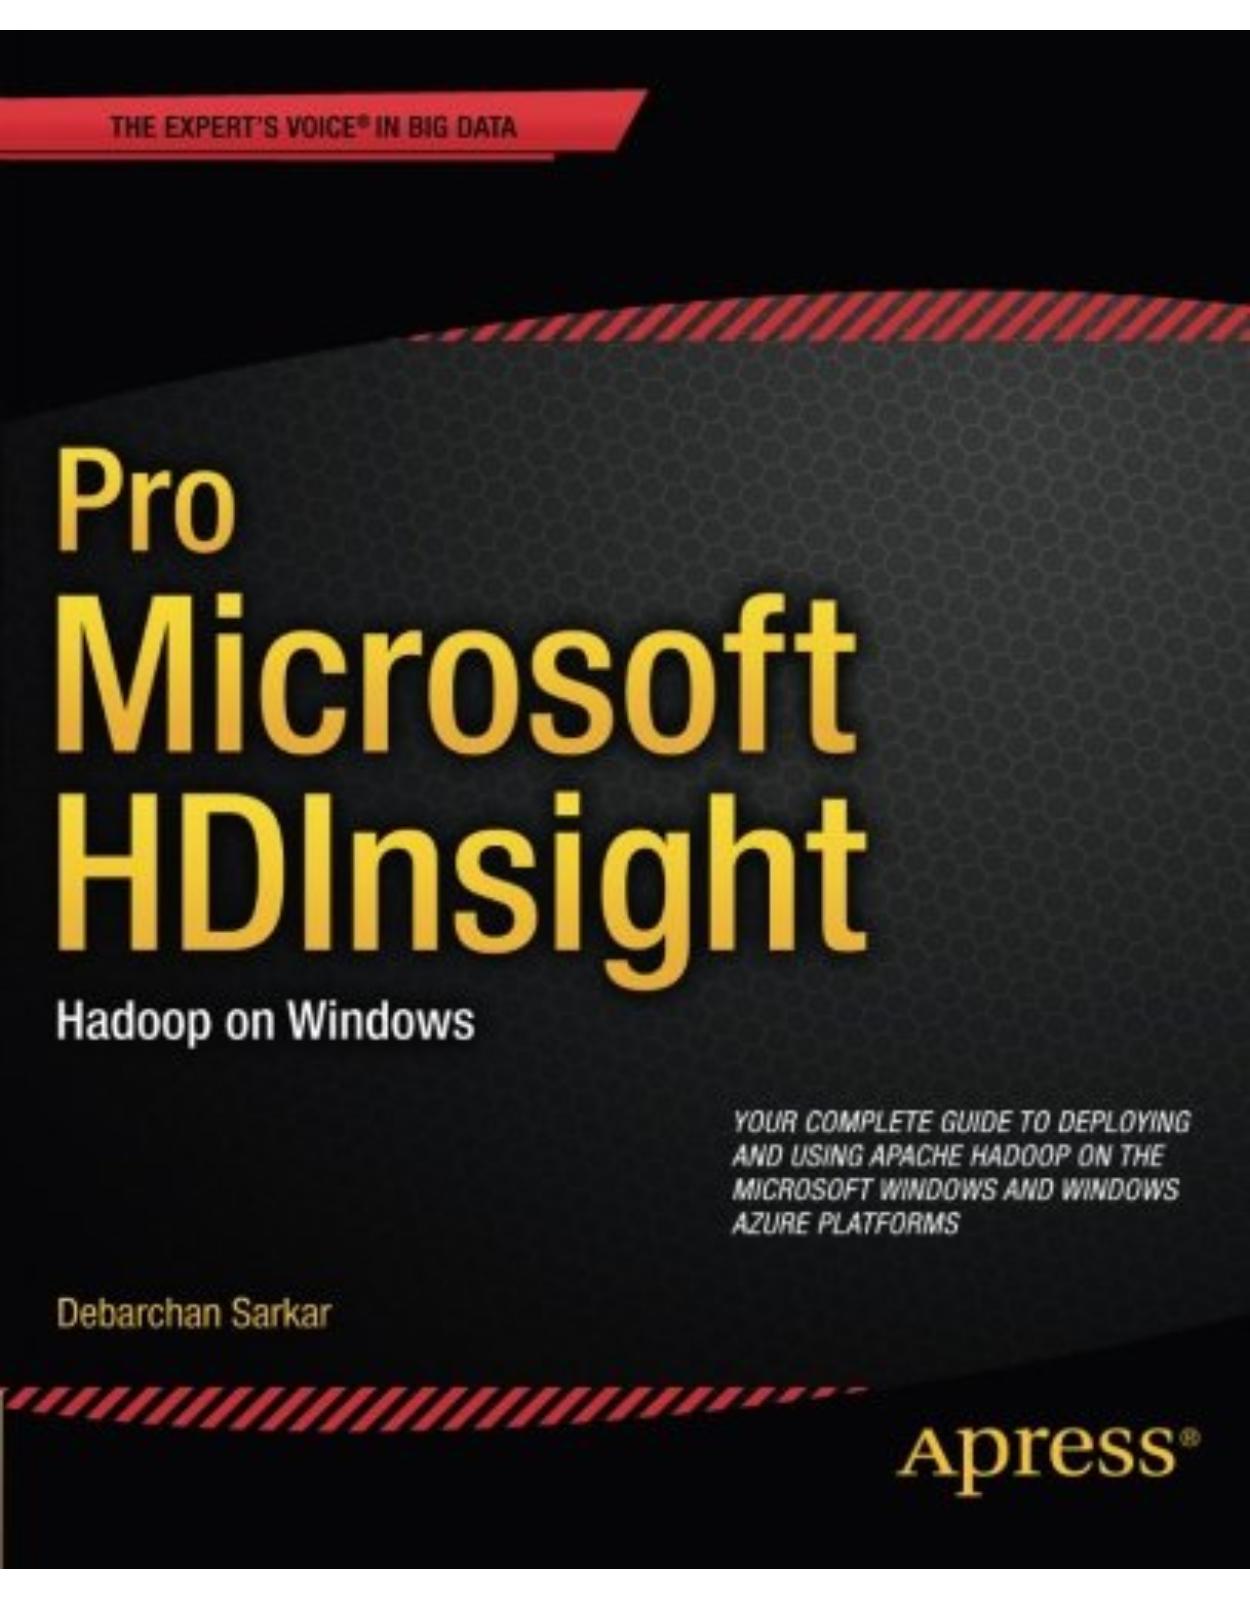 Pro Microsoft HDInsight